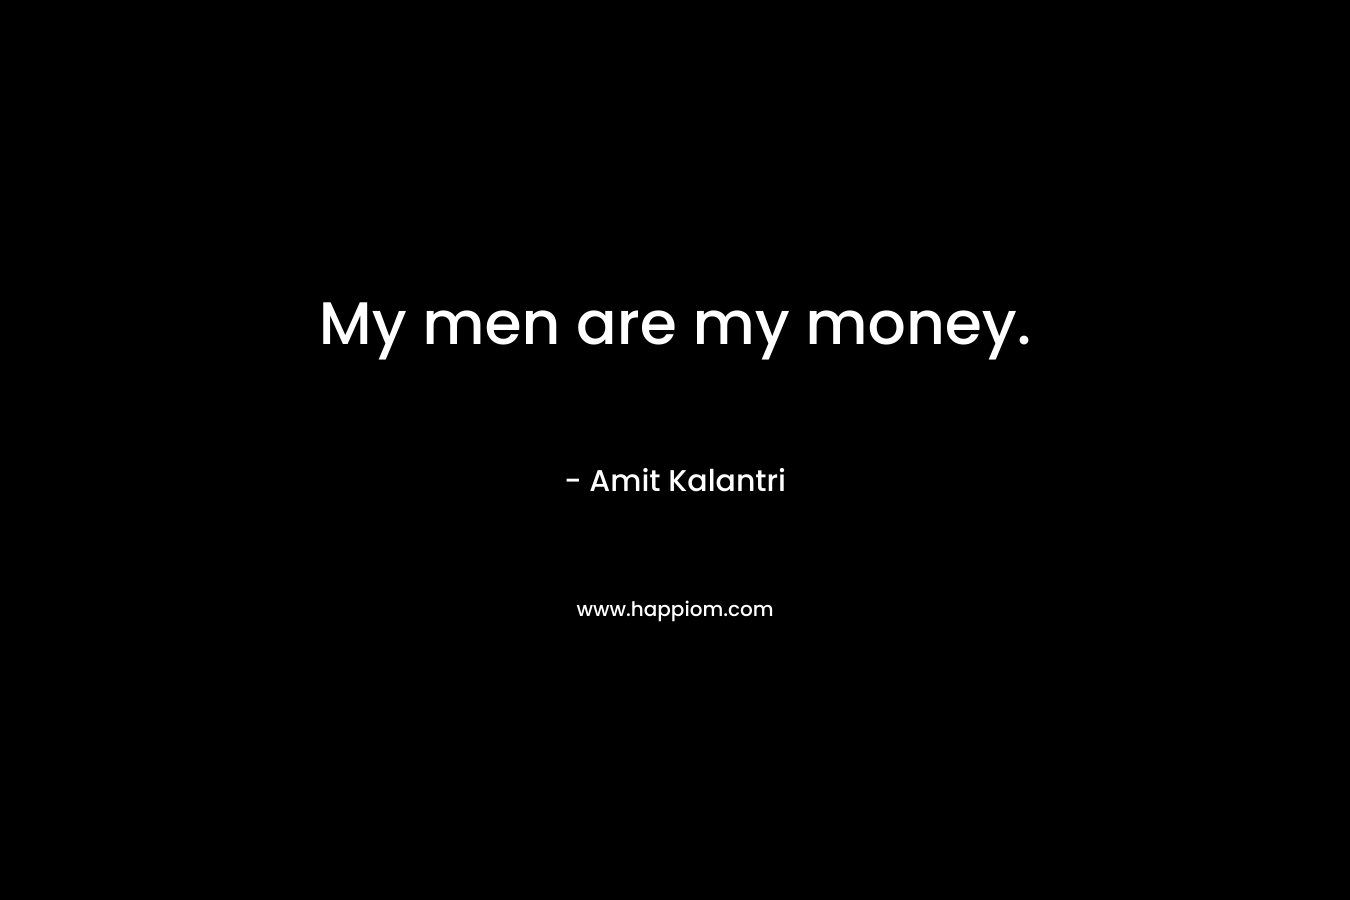 My men are my money.